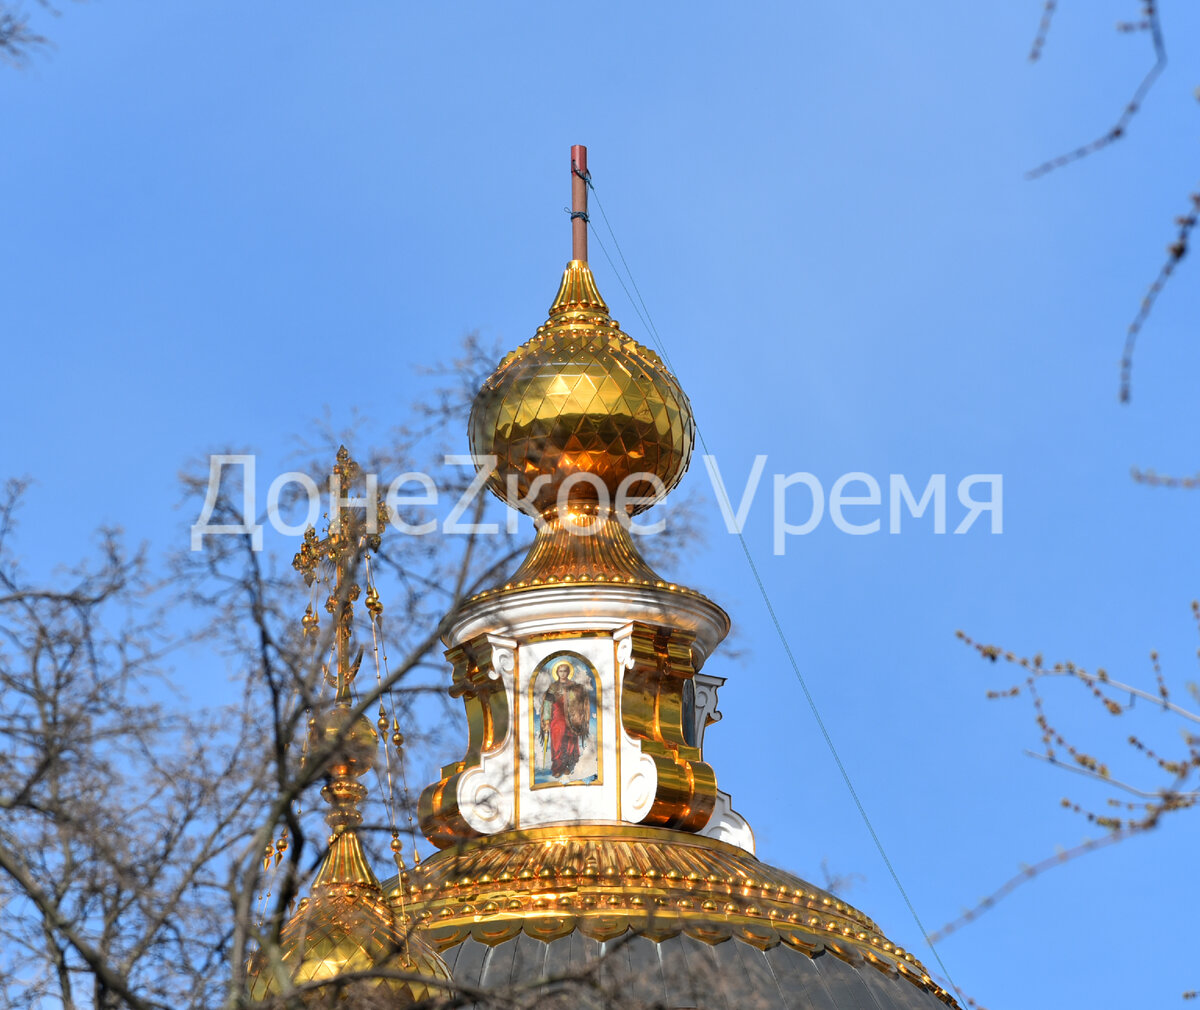 
У храма святых Петра и Февронии в центре Донецка появились бригады рабочих и строительный кран.-2